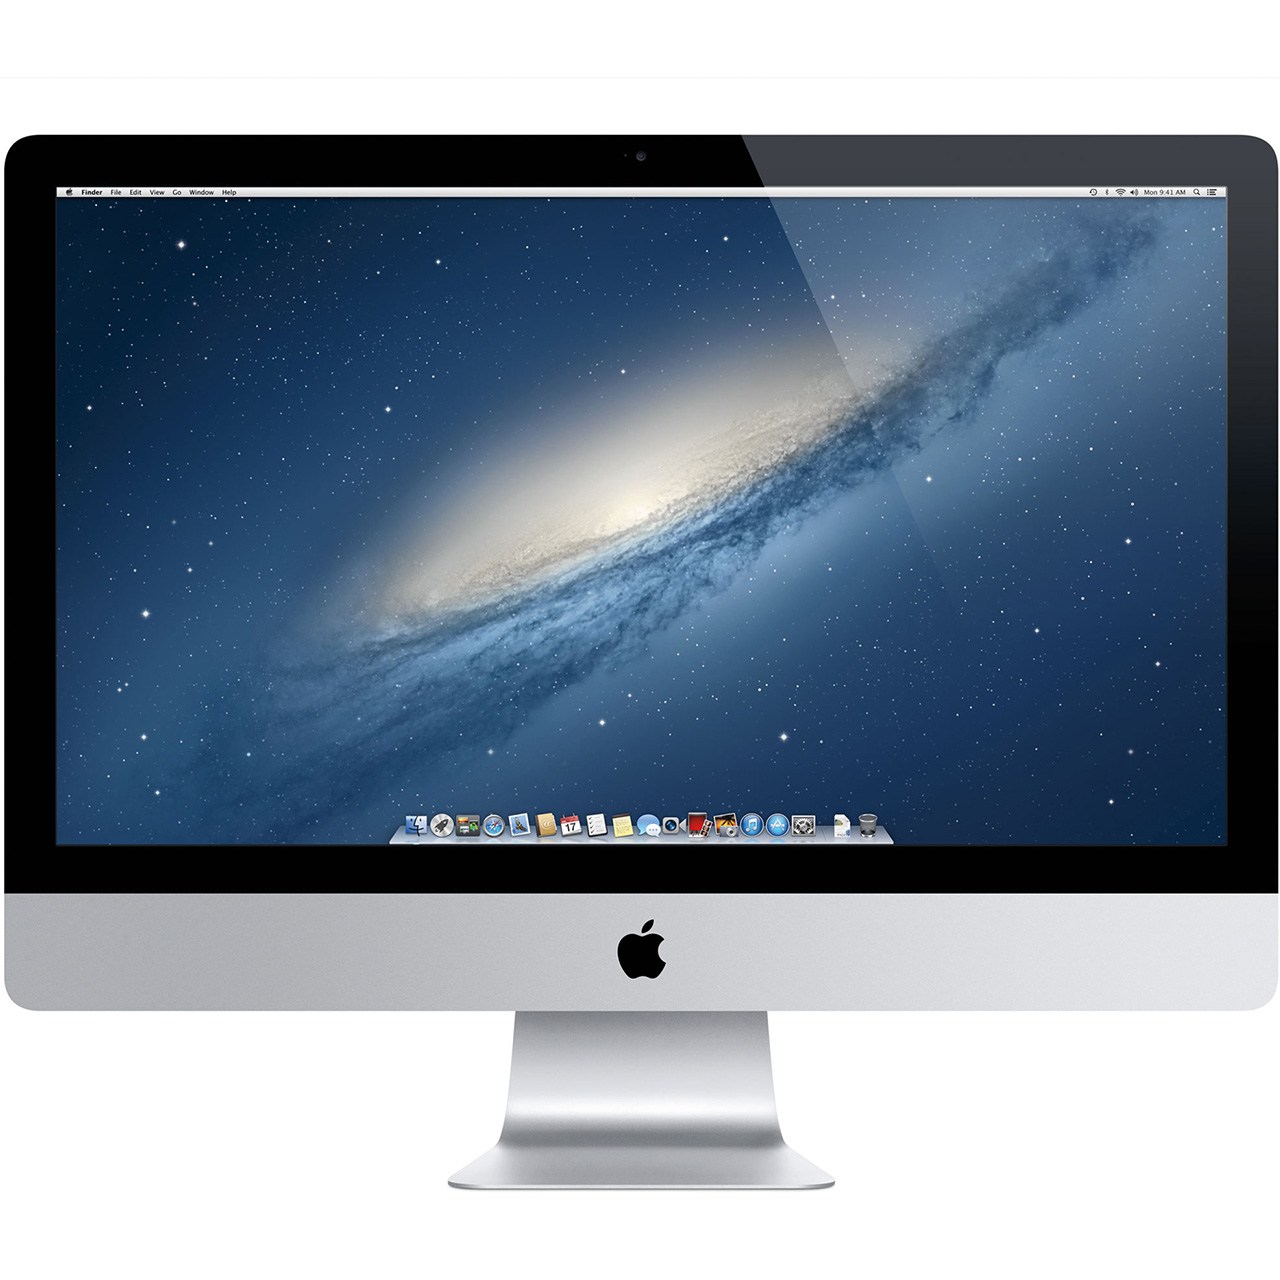 کامپیوتر همه کاره 27 اینچی اپل مدل iMac MK472 2015 با صفحه نمایش رتینا 5K